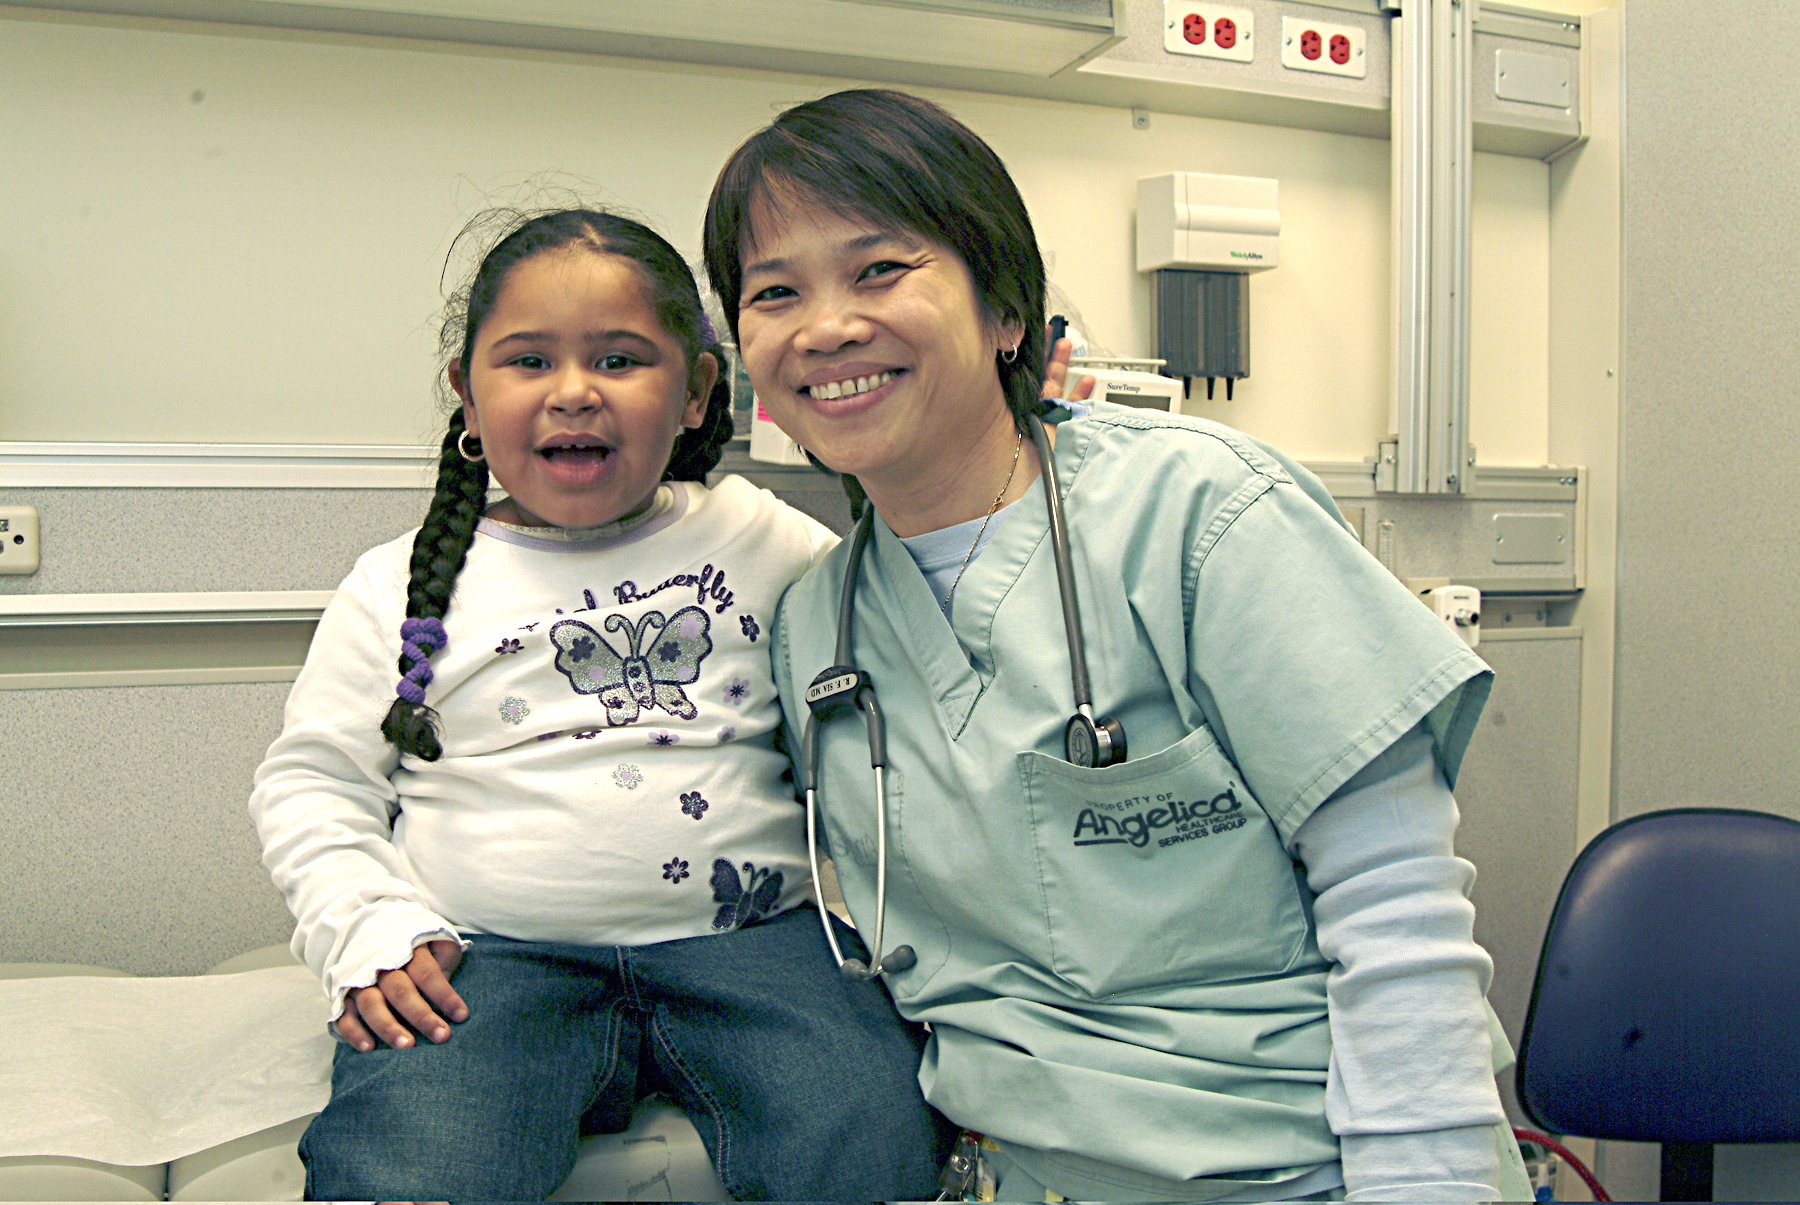 Pediatrician provides care for child